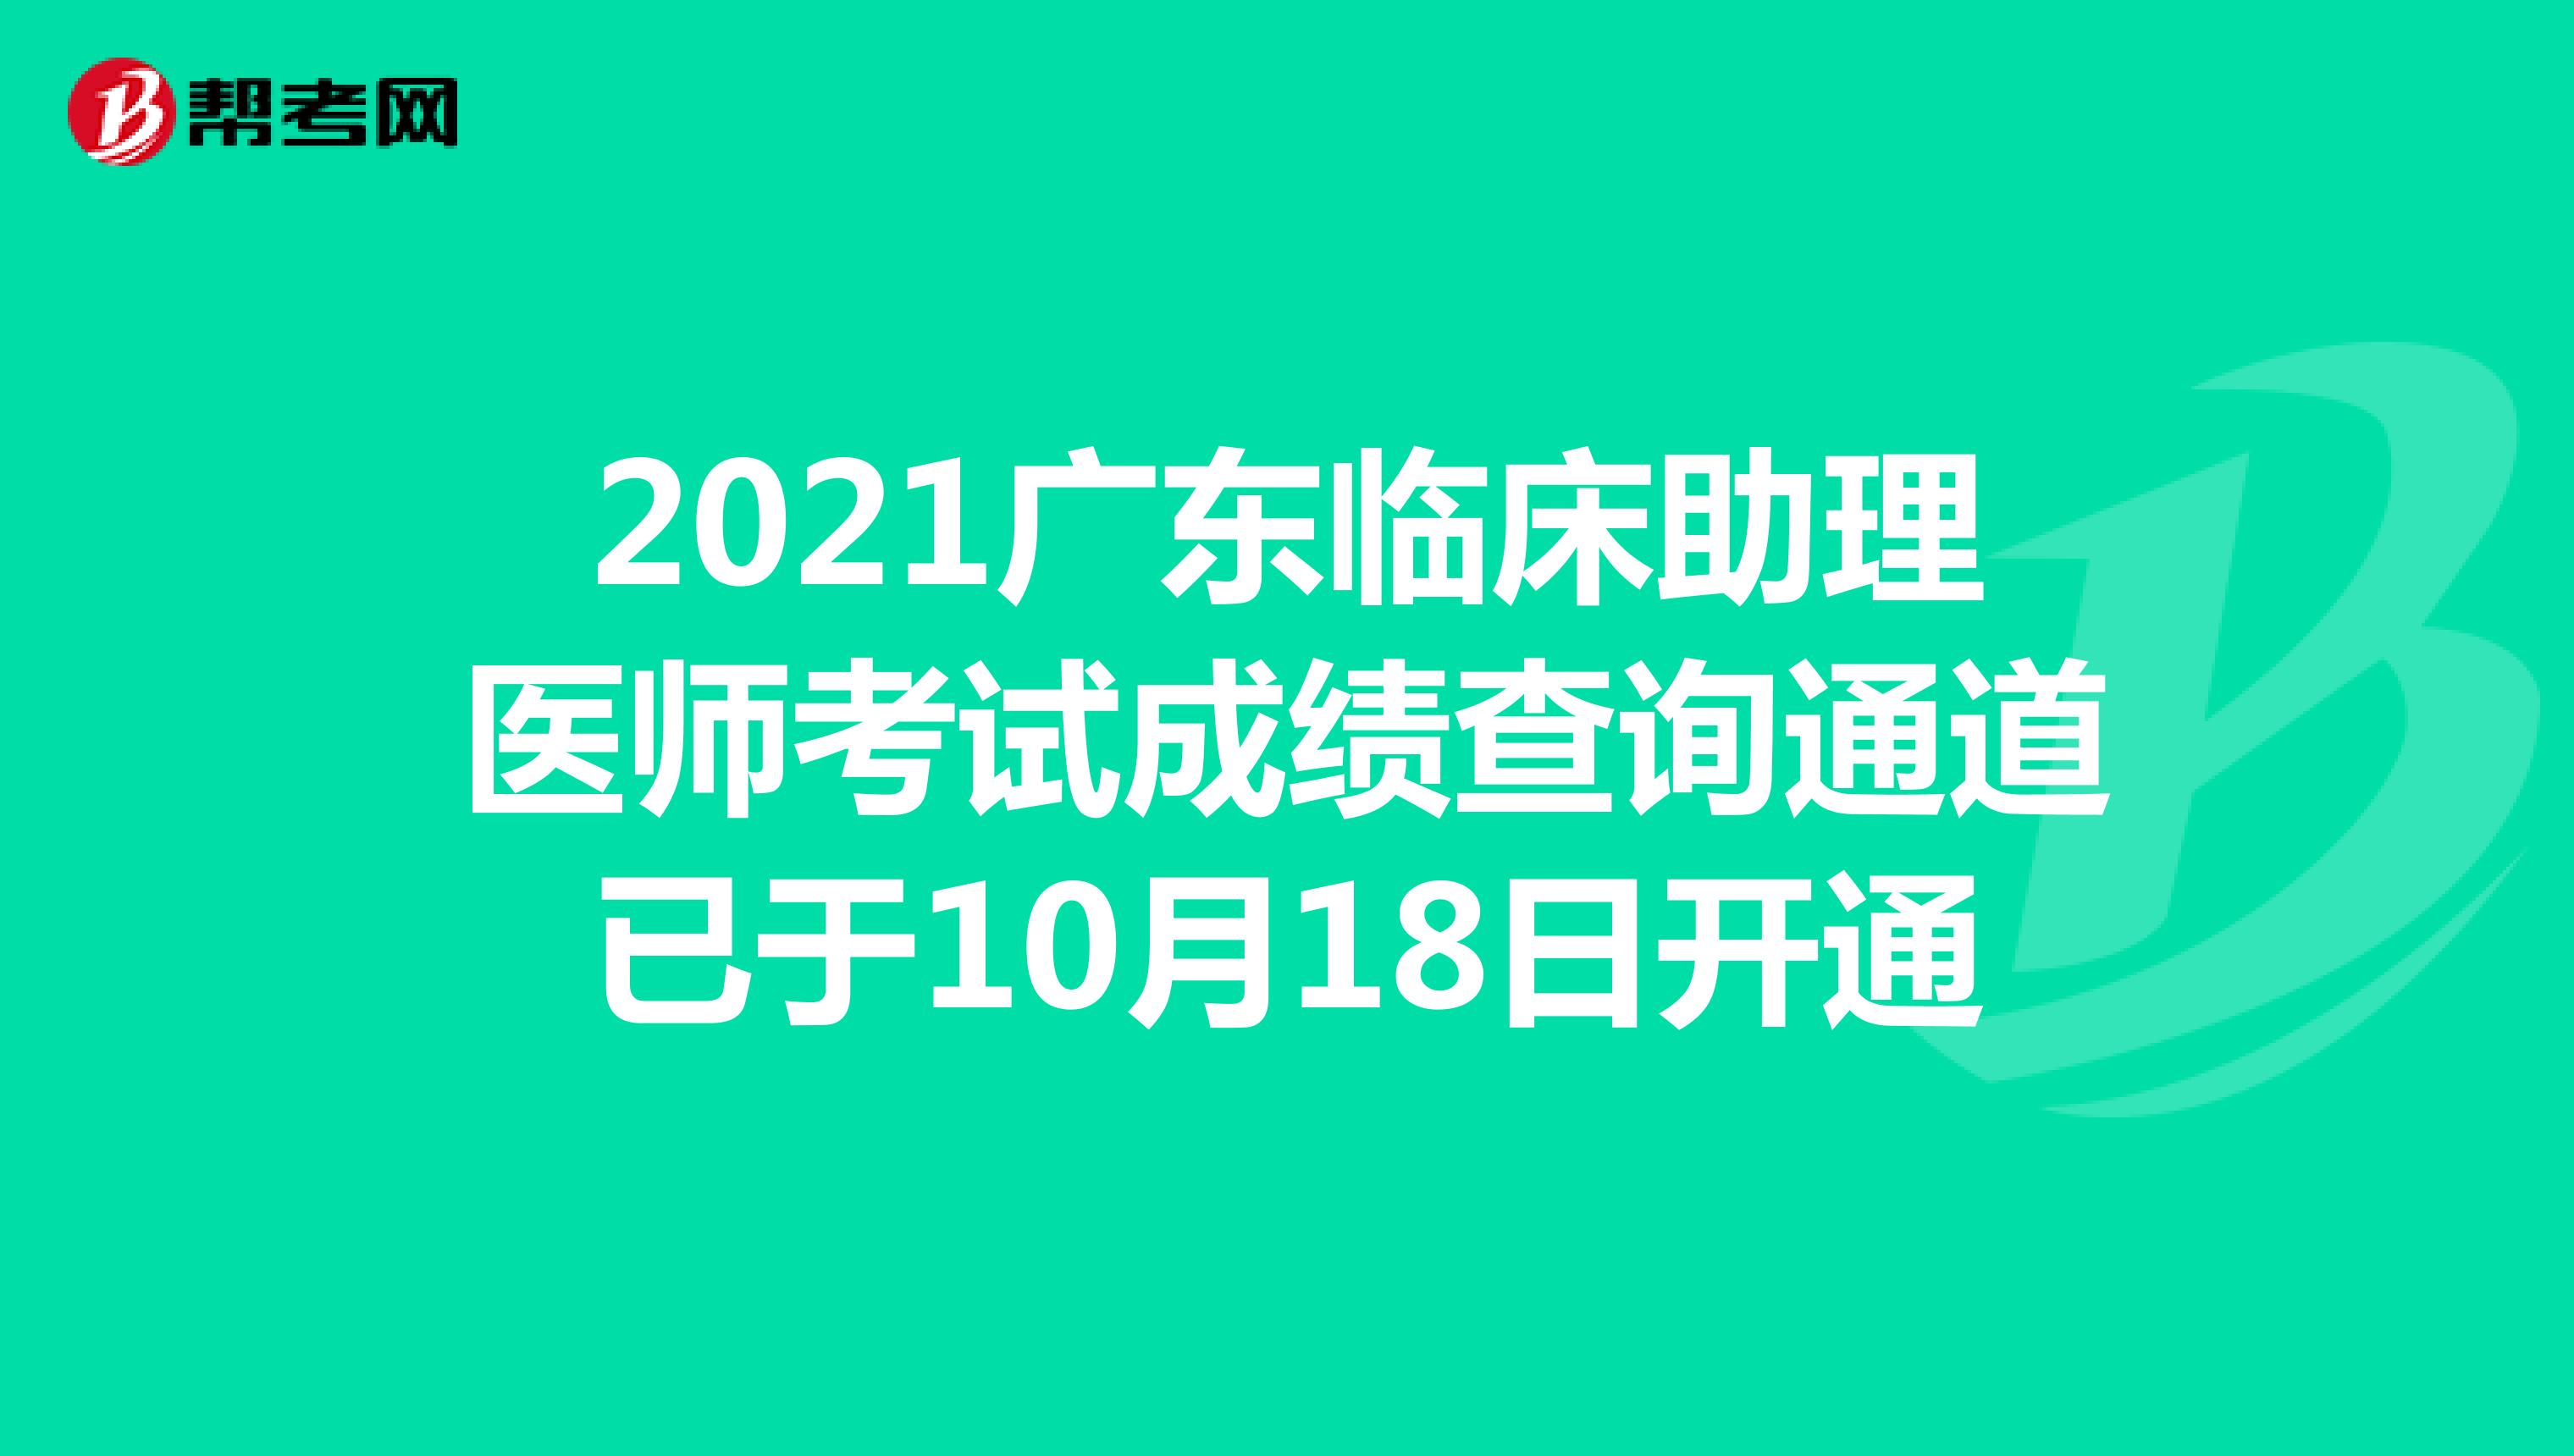 2021广东临床助理医师考试成绩查询通道已于10月18日开通